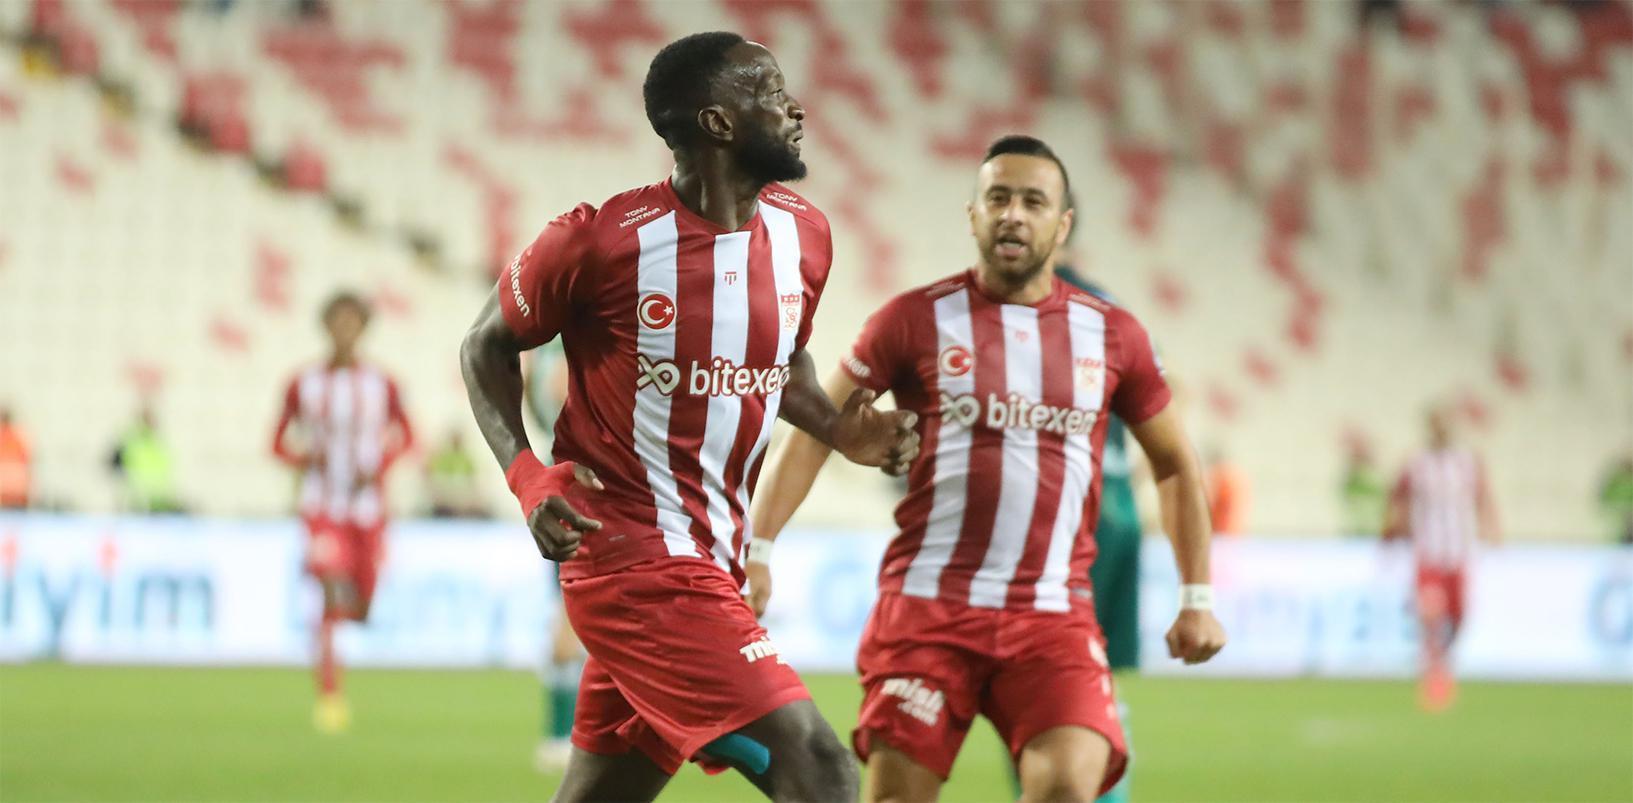 (ÖZET) Sivasspor - Giresunspor maç sonucu: 3-0